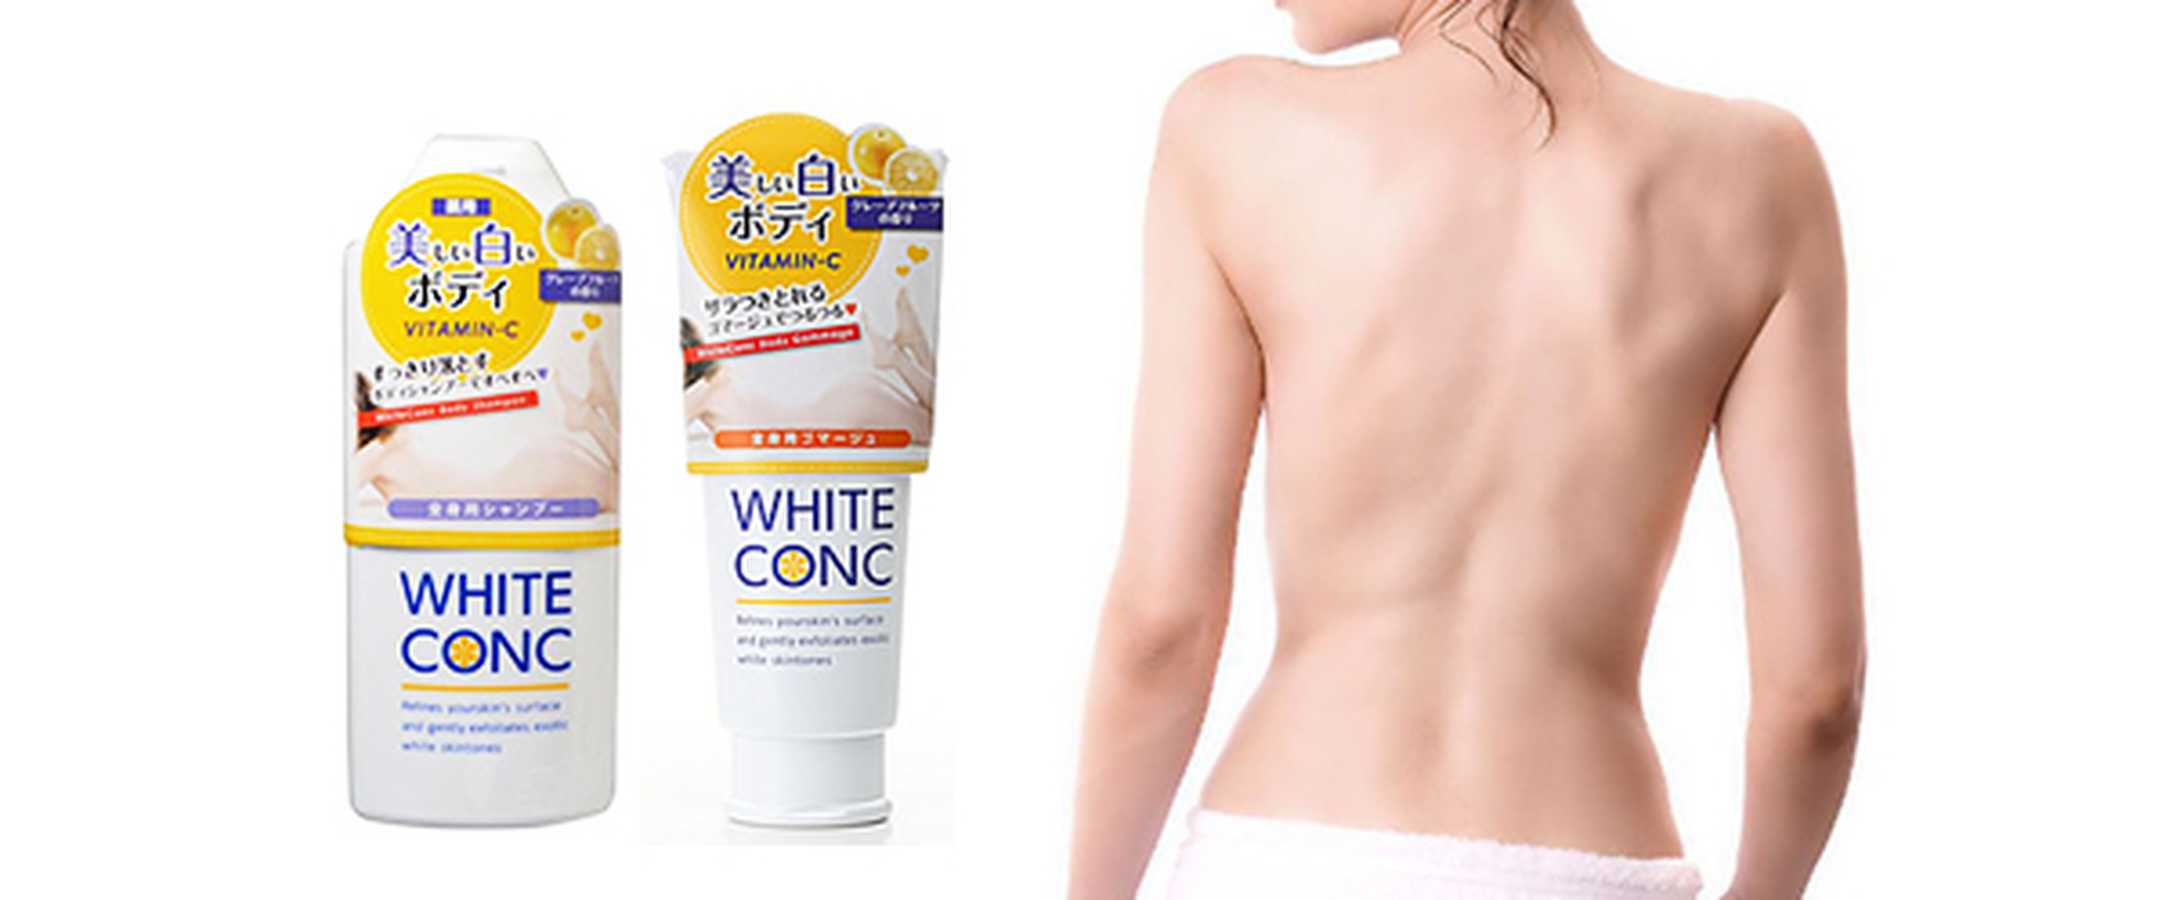 fd69bd39 sua tam white conc body nhat ban duong da trang hong2 12012017182606 - Top 5 dòng sữa tắm được đánh giá cao ở Nhật